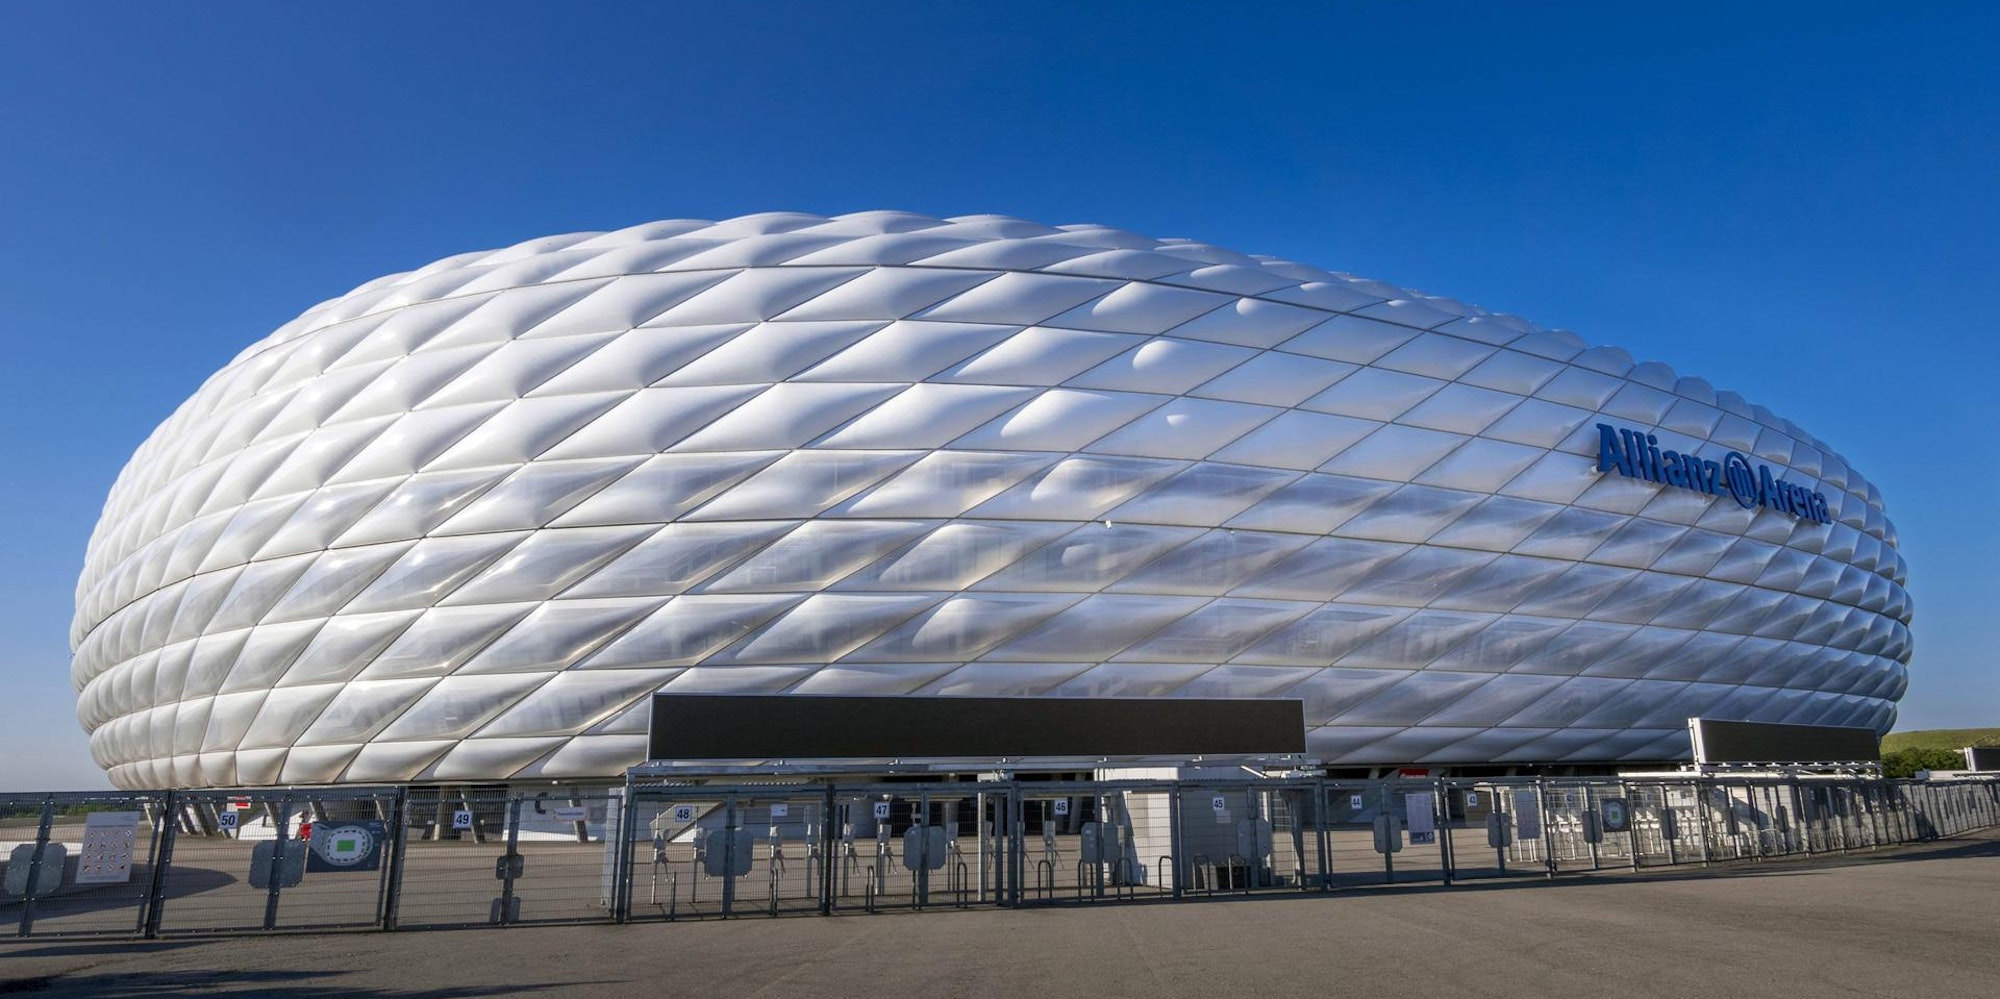 Allianz-Arena imago